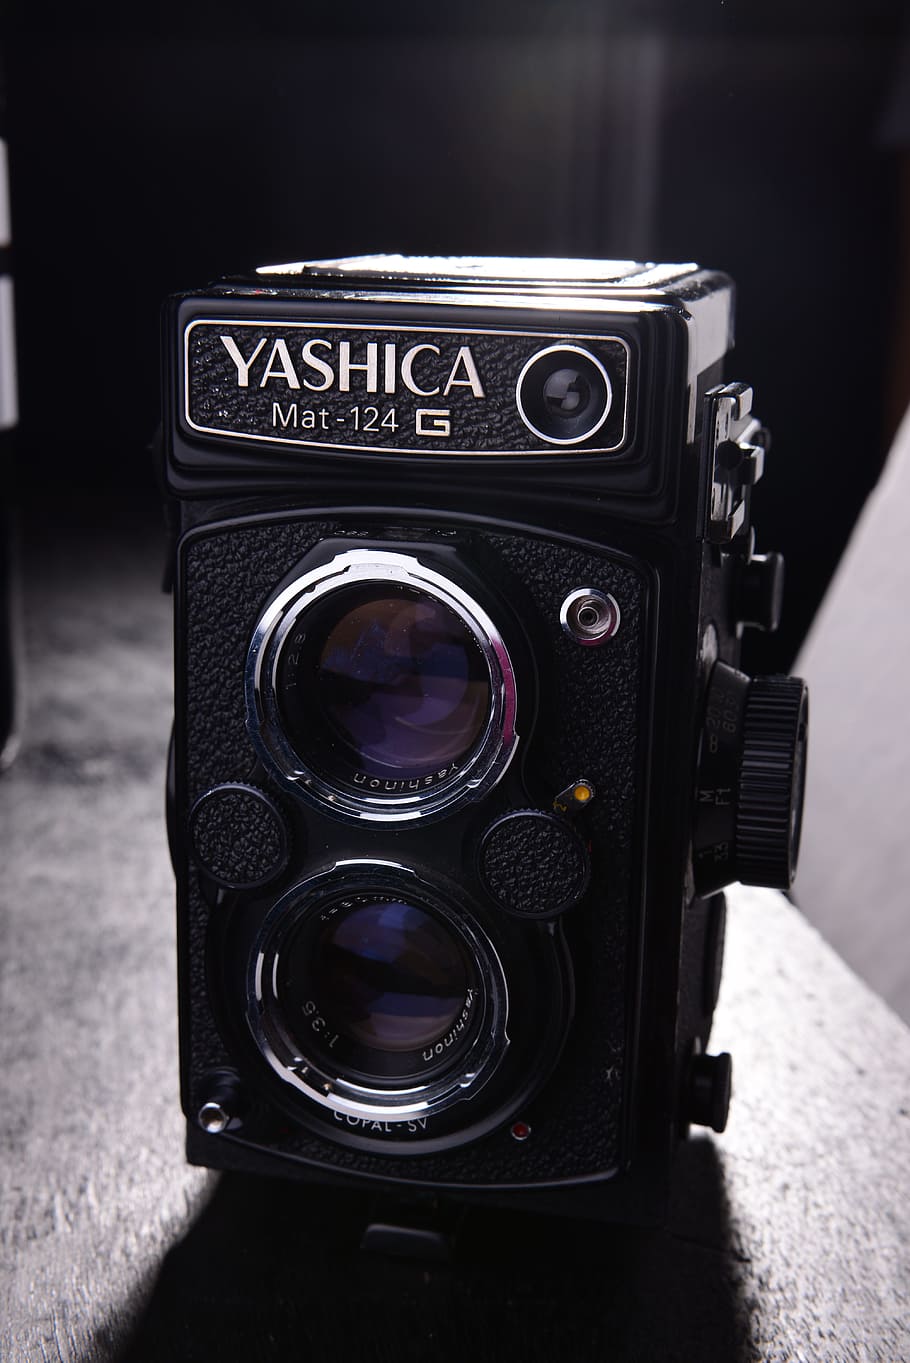 Yashica, スタジオ, ビンテージ, カメラ, ビンテージカメラ, カメラ-写真機器, レトロなスタイル, 昔ながらの機器, 古い, ブラックカラー